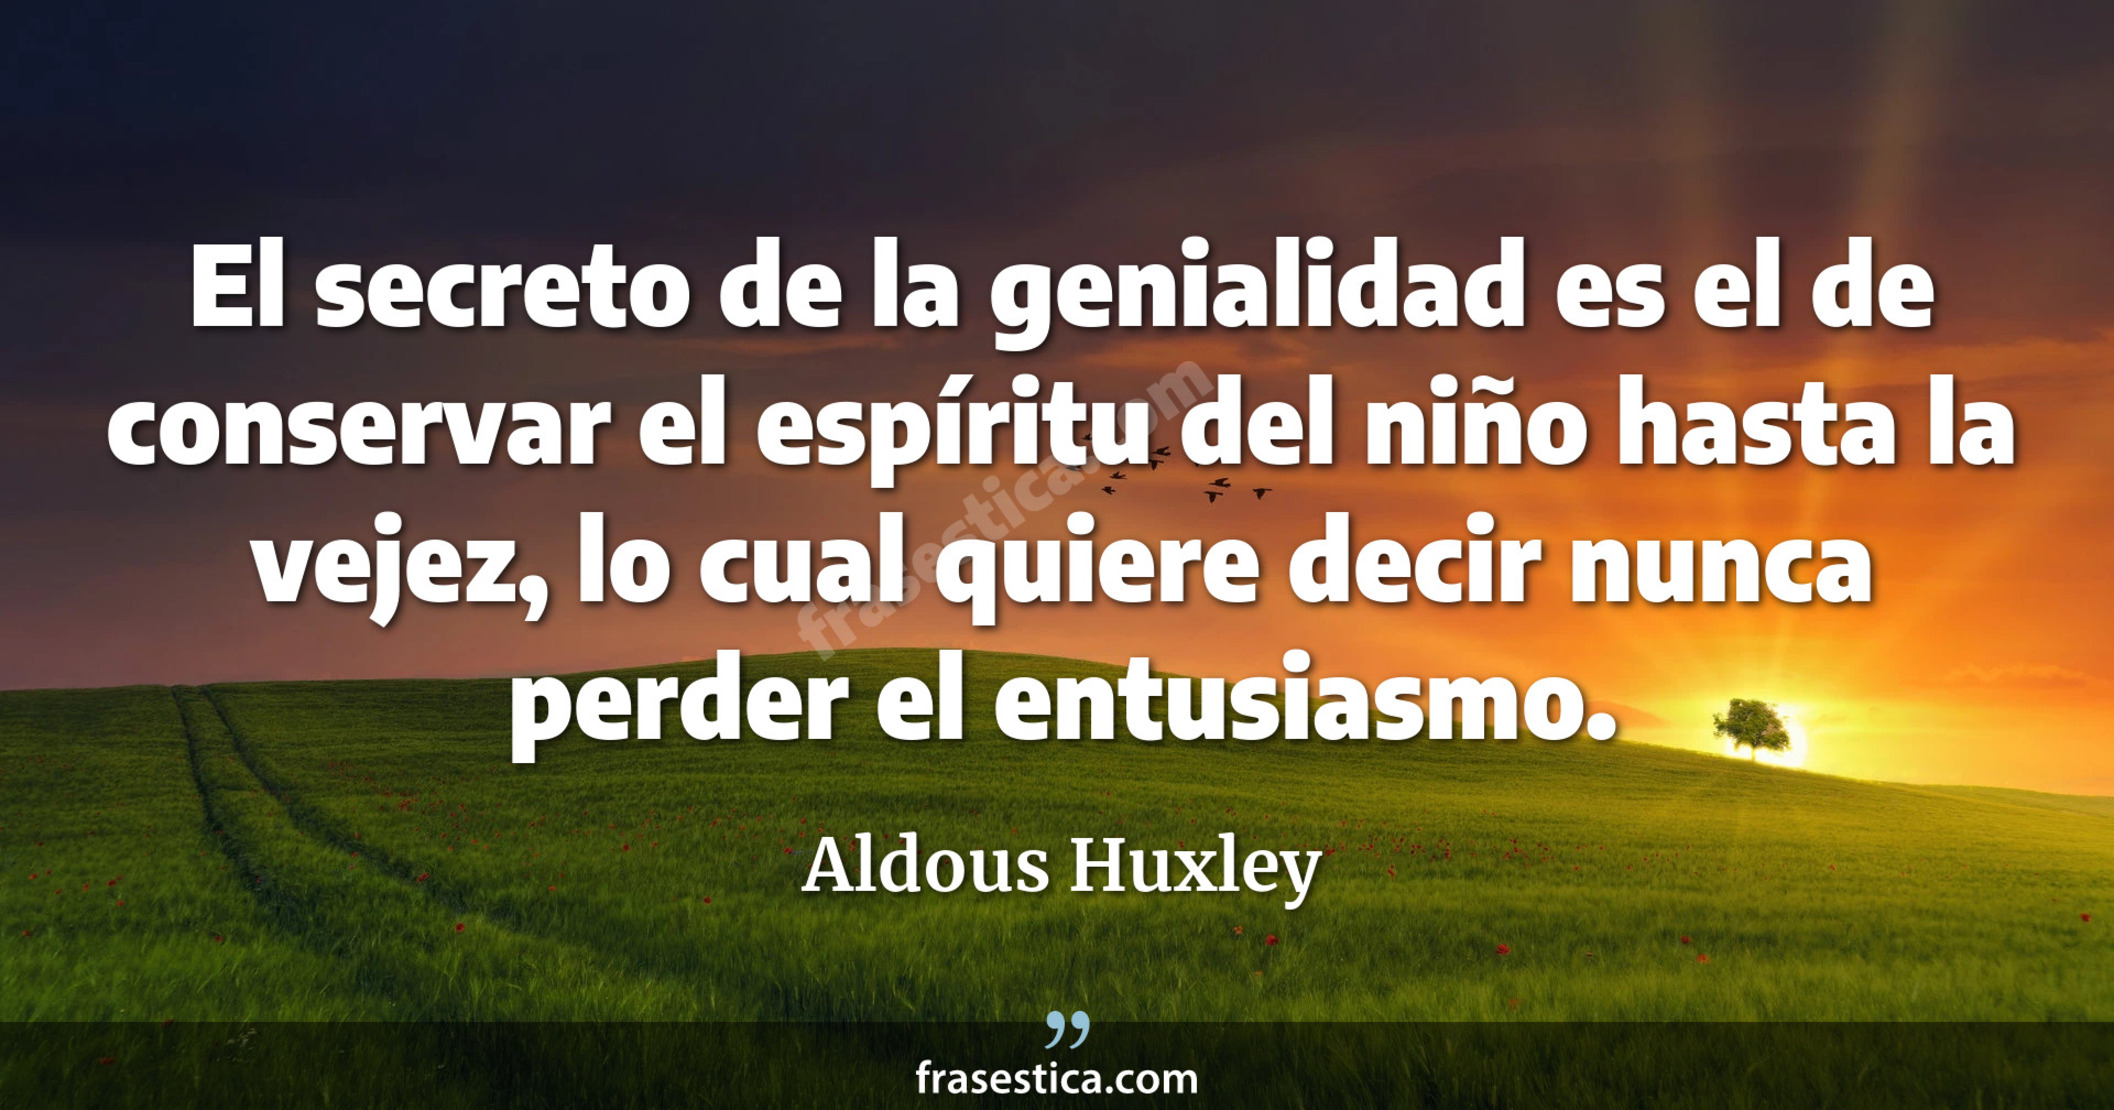 El secreto de la genialidad es el de conservar el espíritu del niño hasta la vejez, lo cual quiere decir nunca perder el entusiasmo. - Aldous Huxley